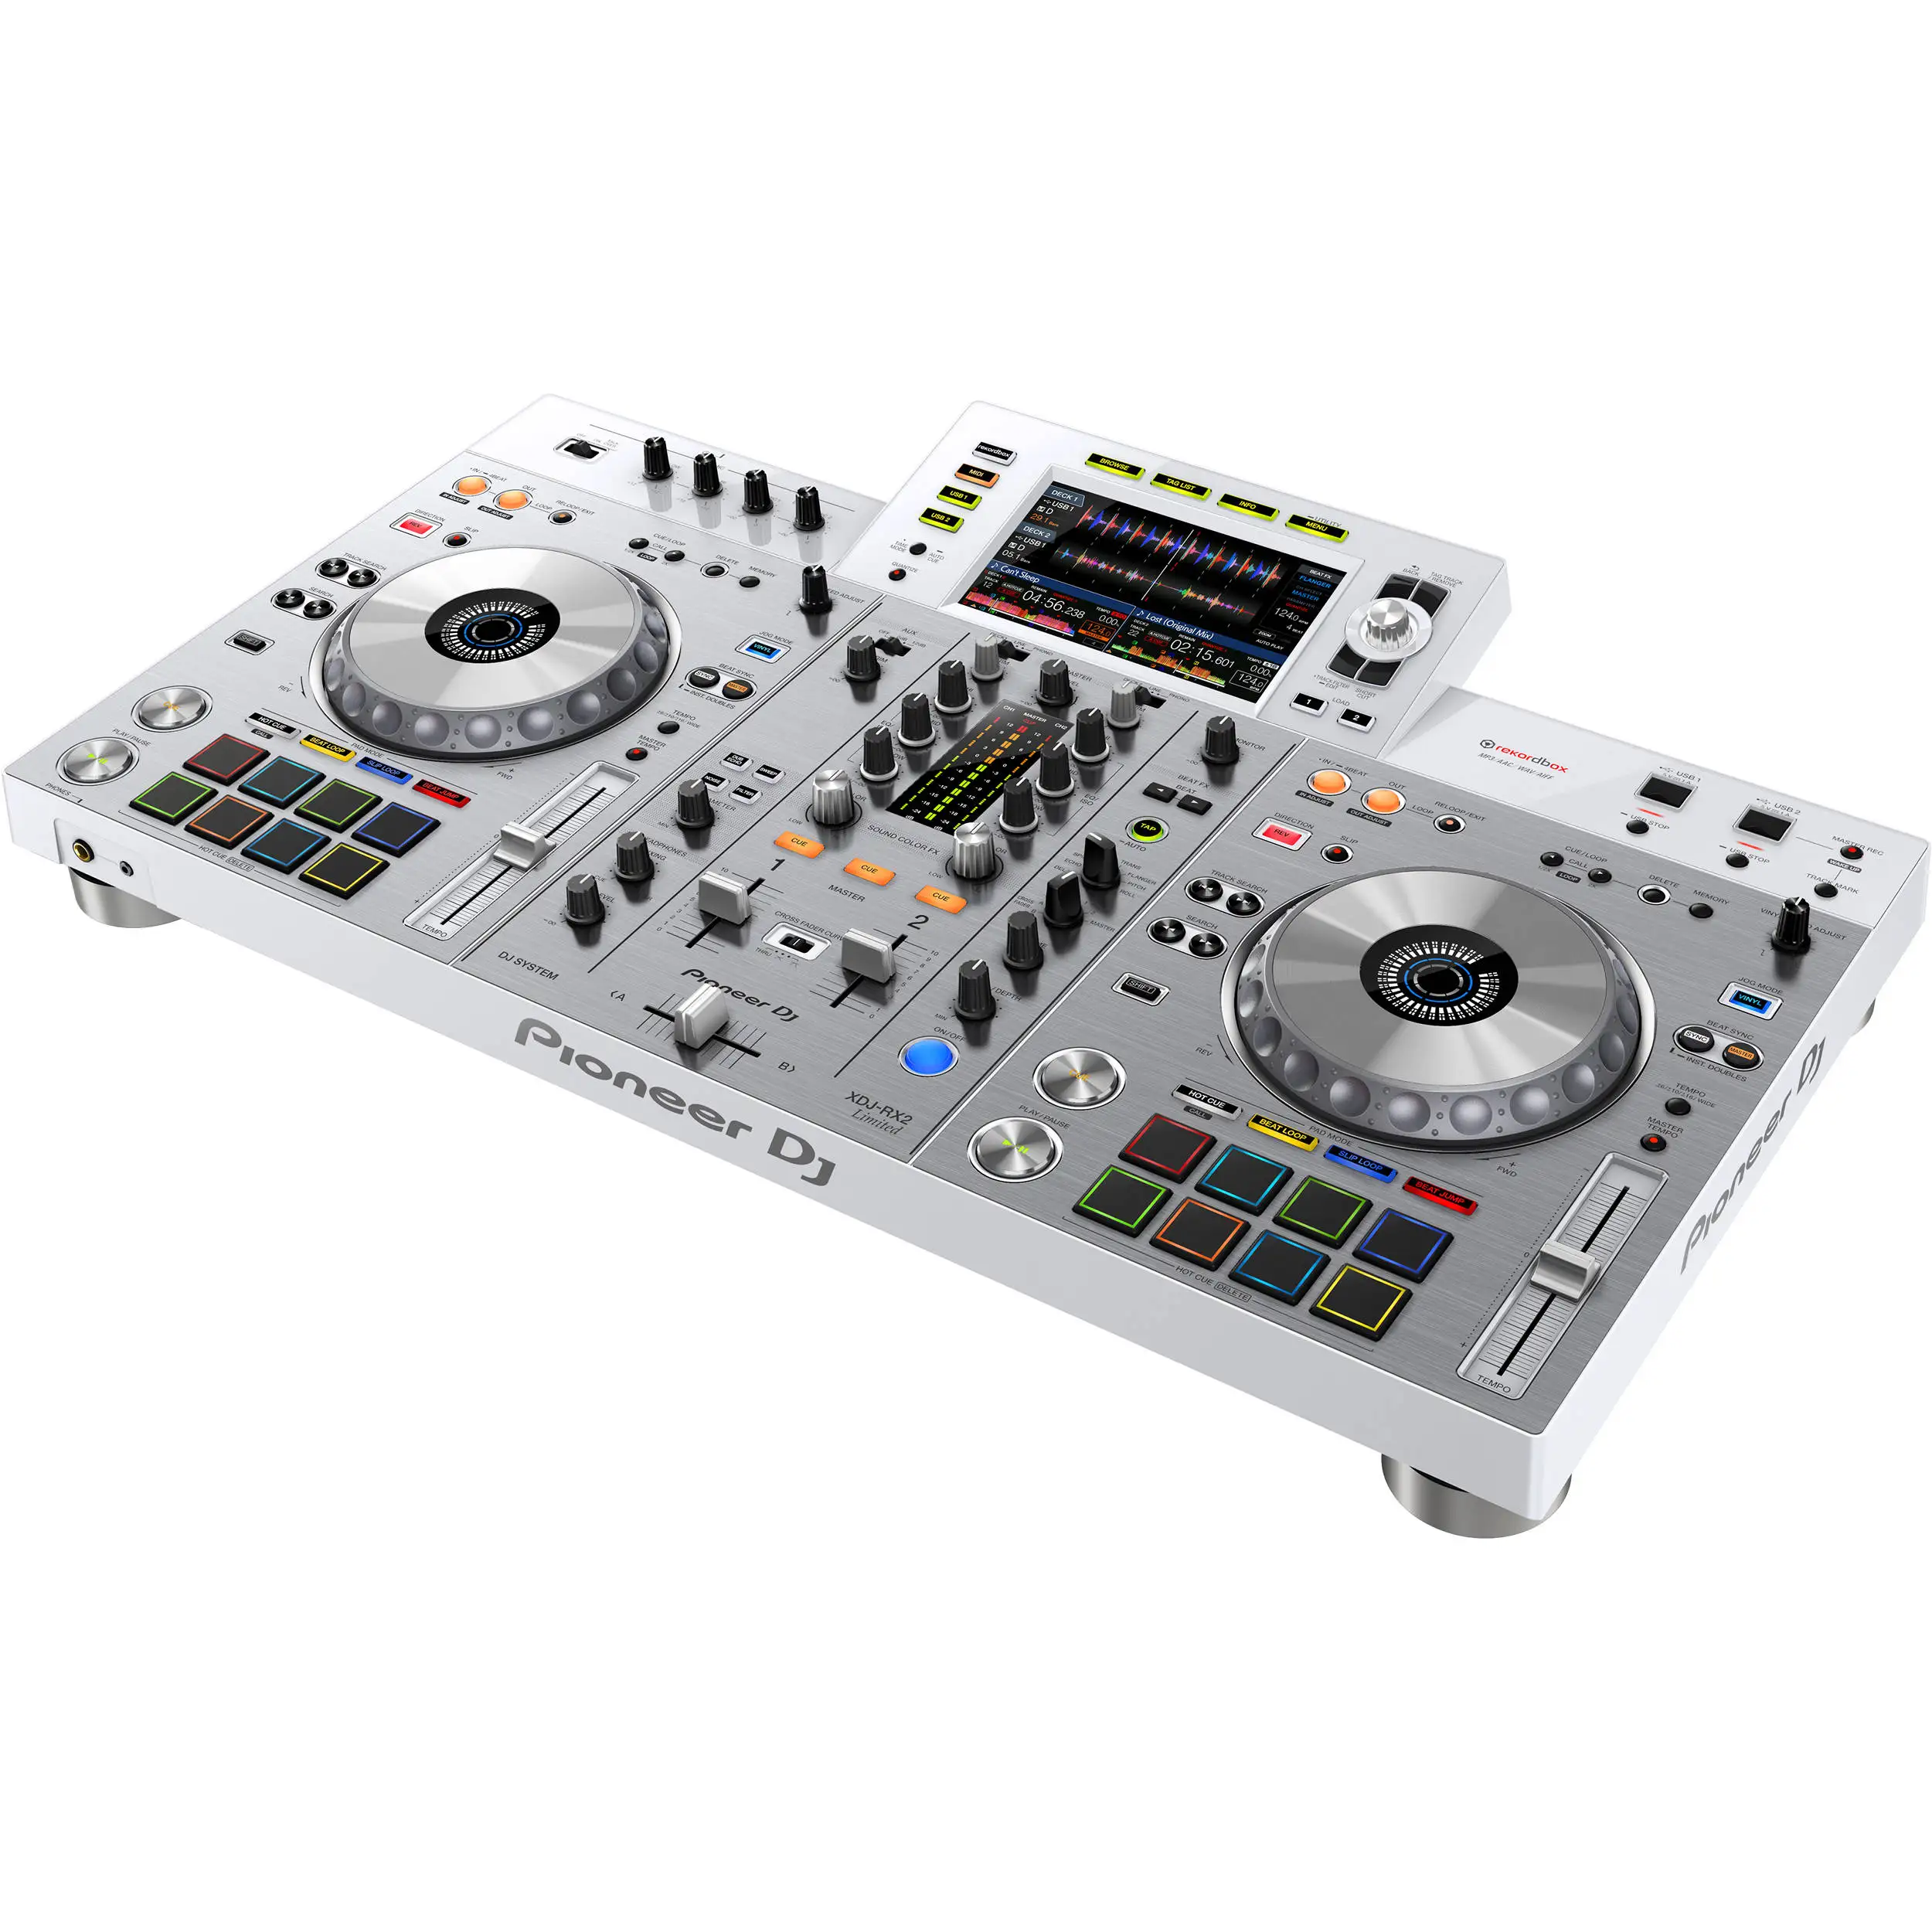 

Летняя распродажа скидка 100% со скидкой Pioneer DJ XDJ-RX2-W интегрированная DJ система микшер музыкальный инструмент Лидер продаж